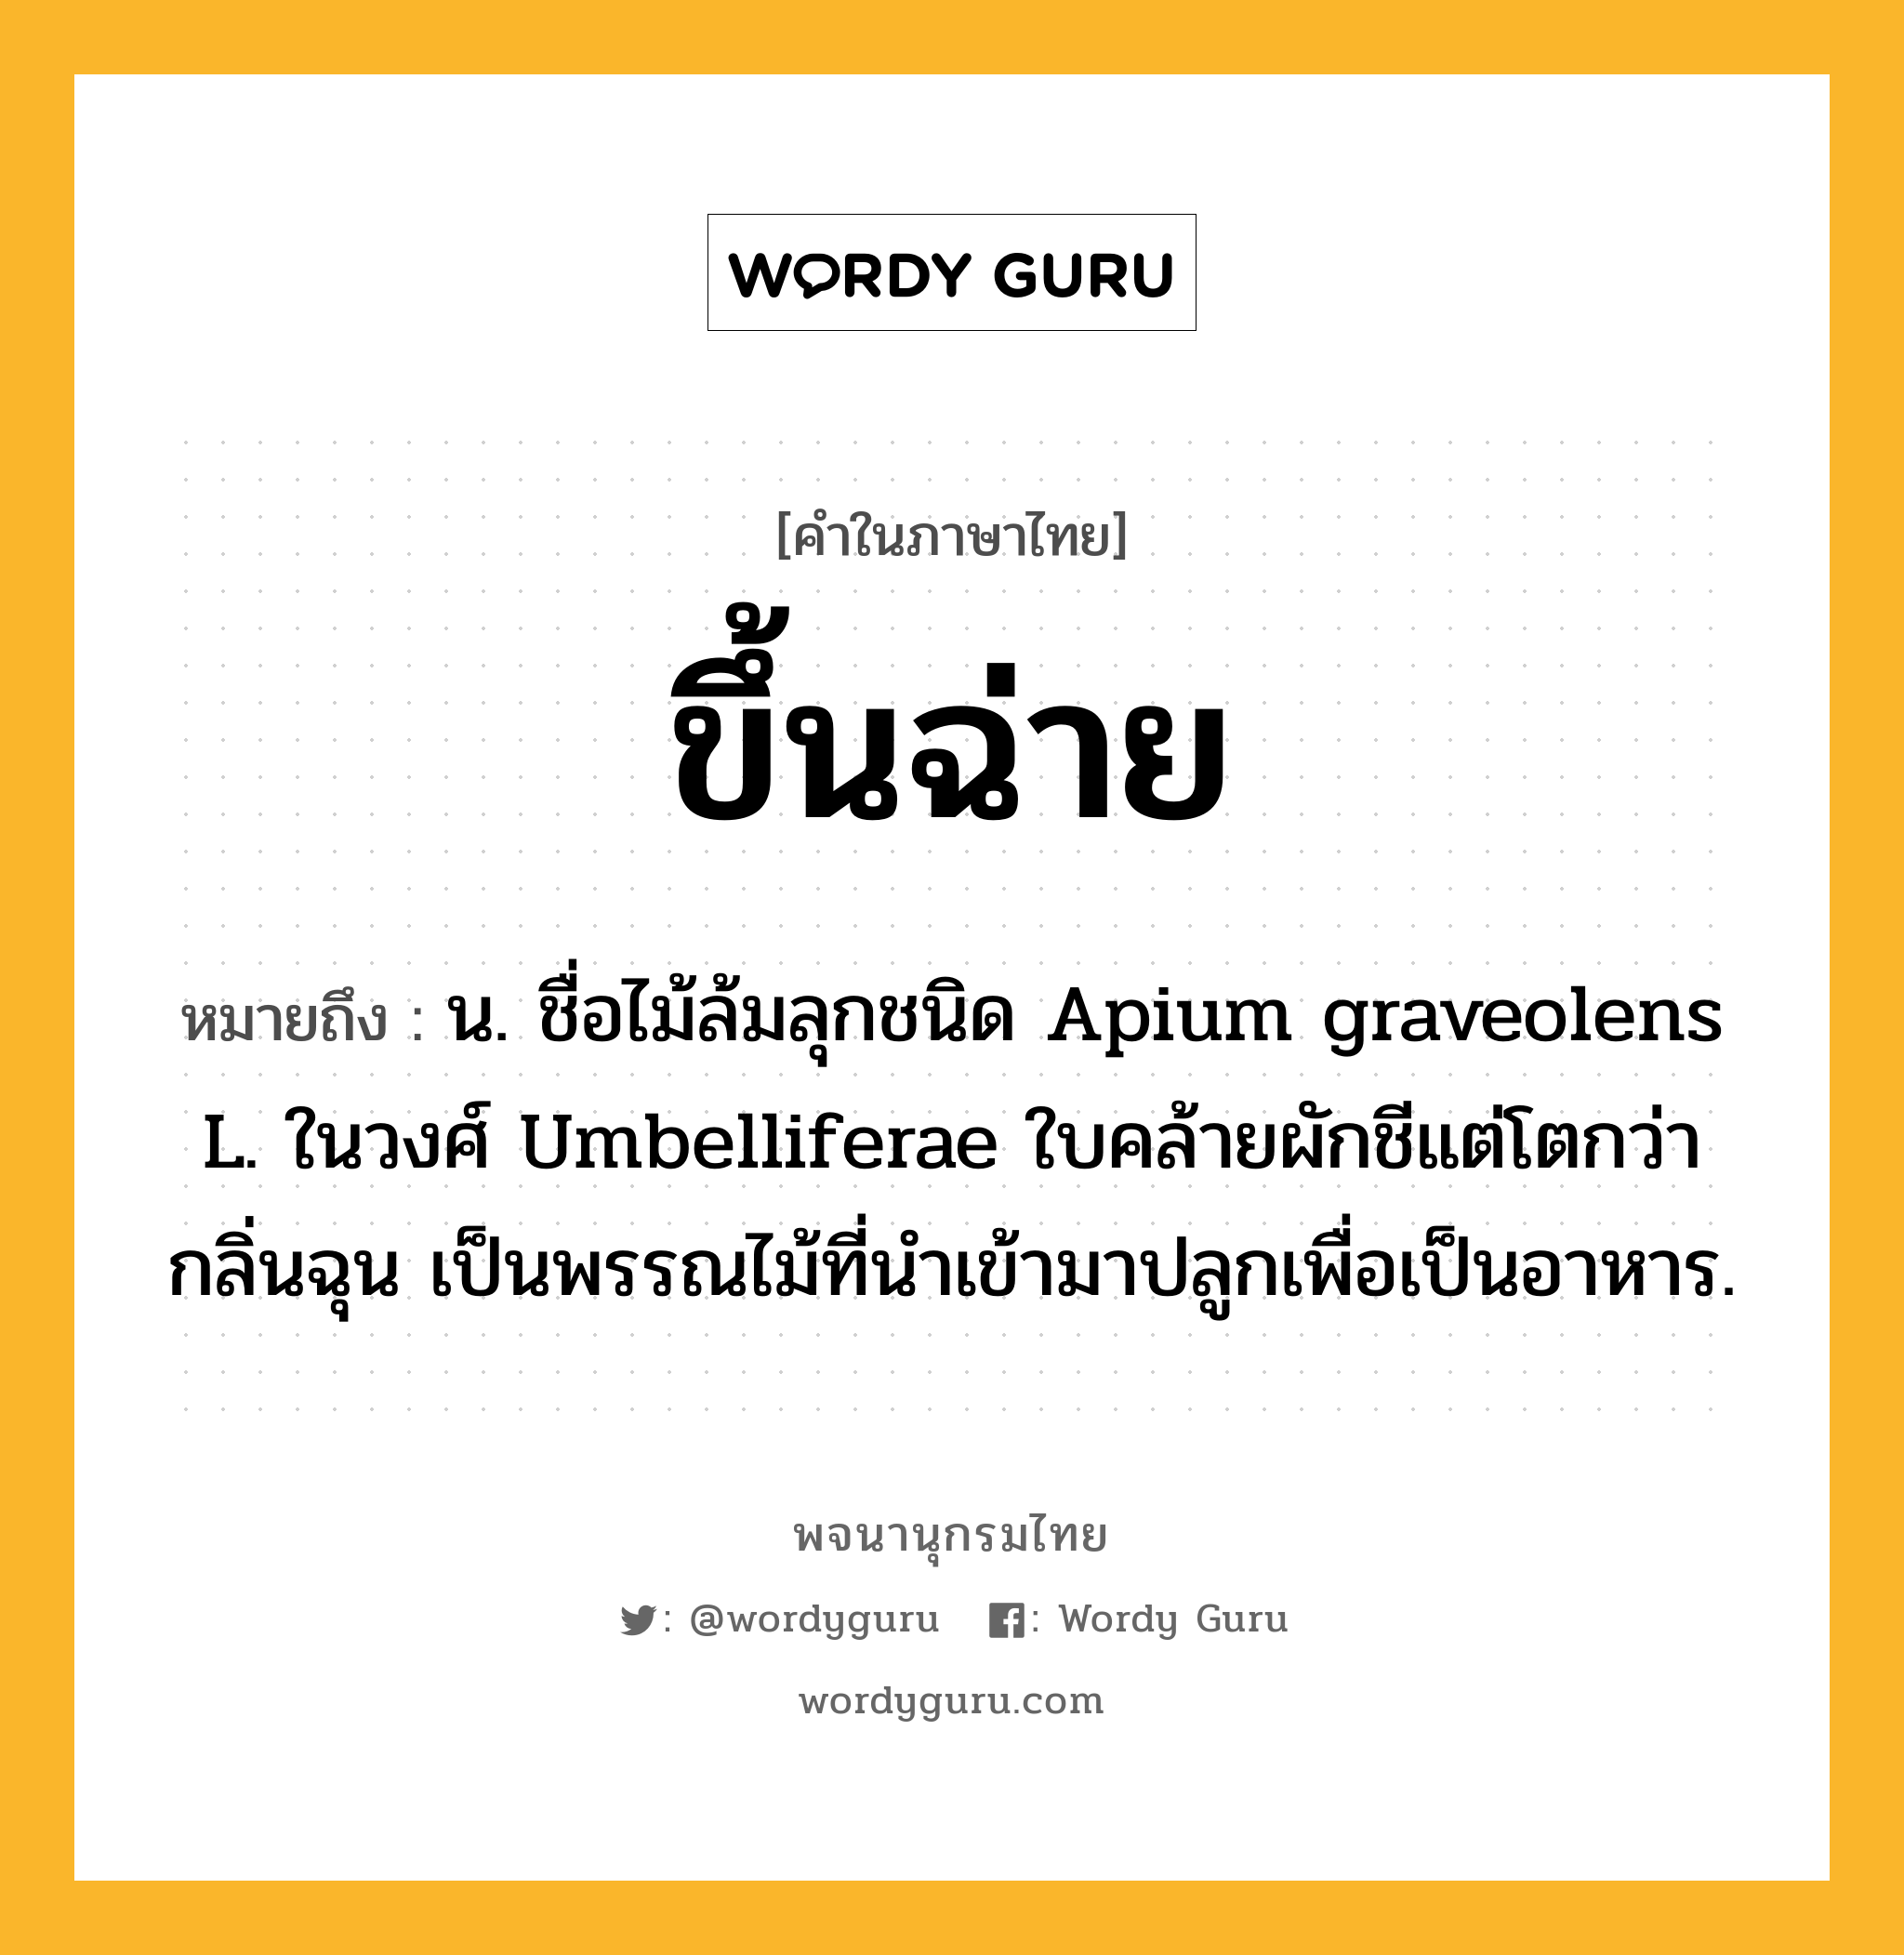 ขึ้นฉ่าย หมายถึงอะไร?, คำในภาษาไทย ขึ้นฉ่าย หมายถึง น. ชื่อไม้ล้มลุกชนิด Apium graveolens L. ในวงศ์ Umbelliferae ใบคล้ายผักชีแต่โตกว่า กลิ่นฉุน เป็นพรรณไม้ที่นําเข้ามาปลูกเพื่อเป็นอาหาร.